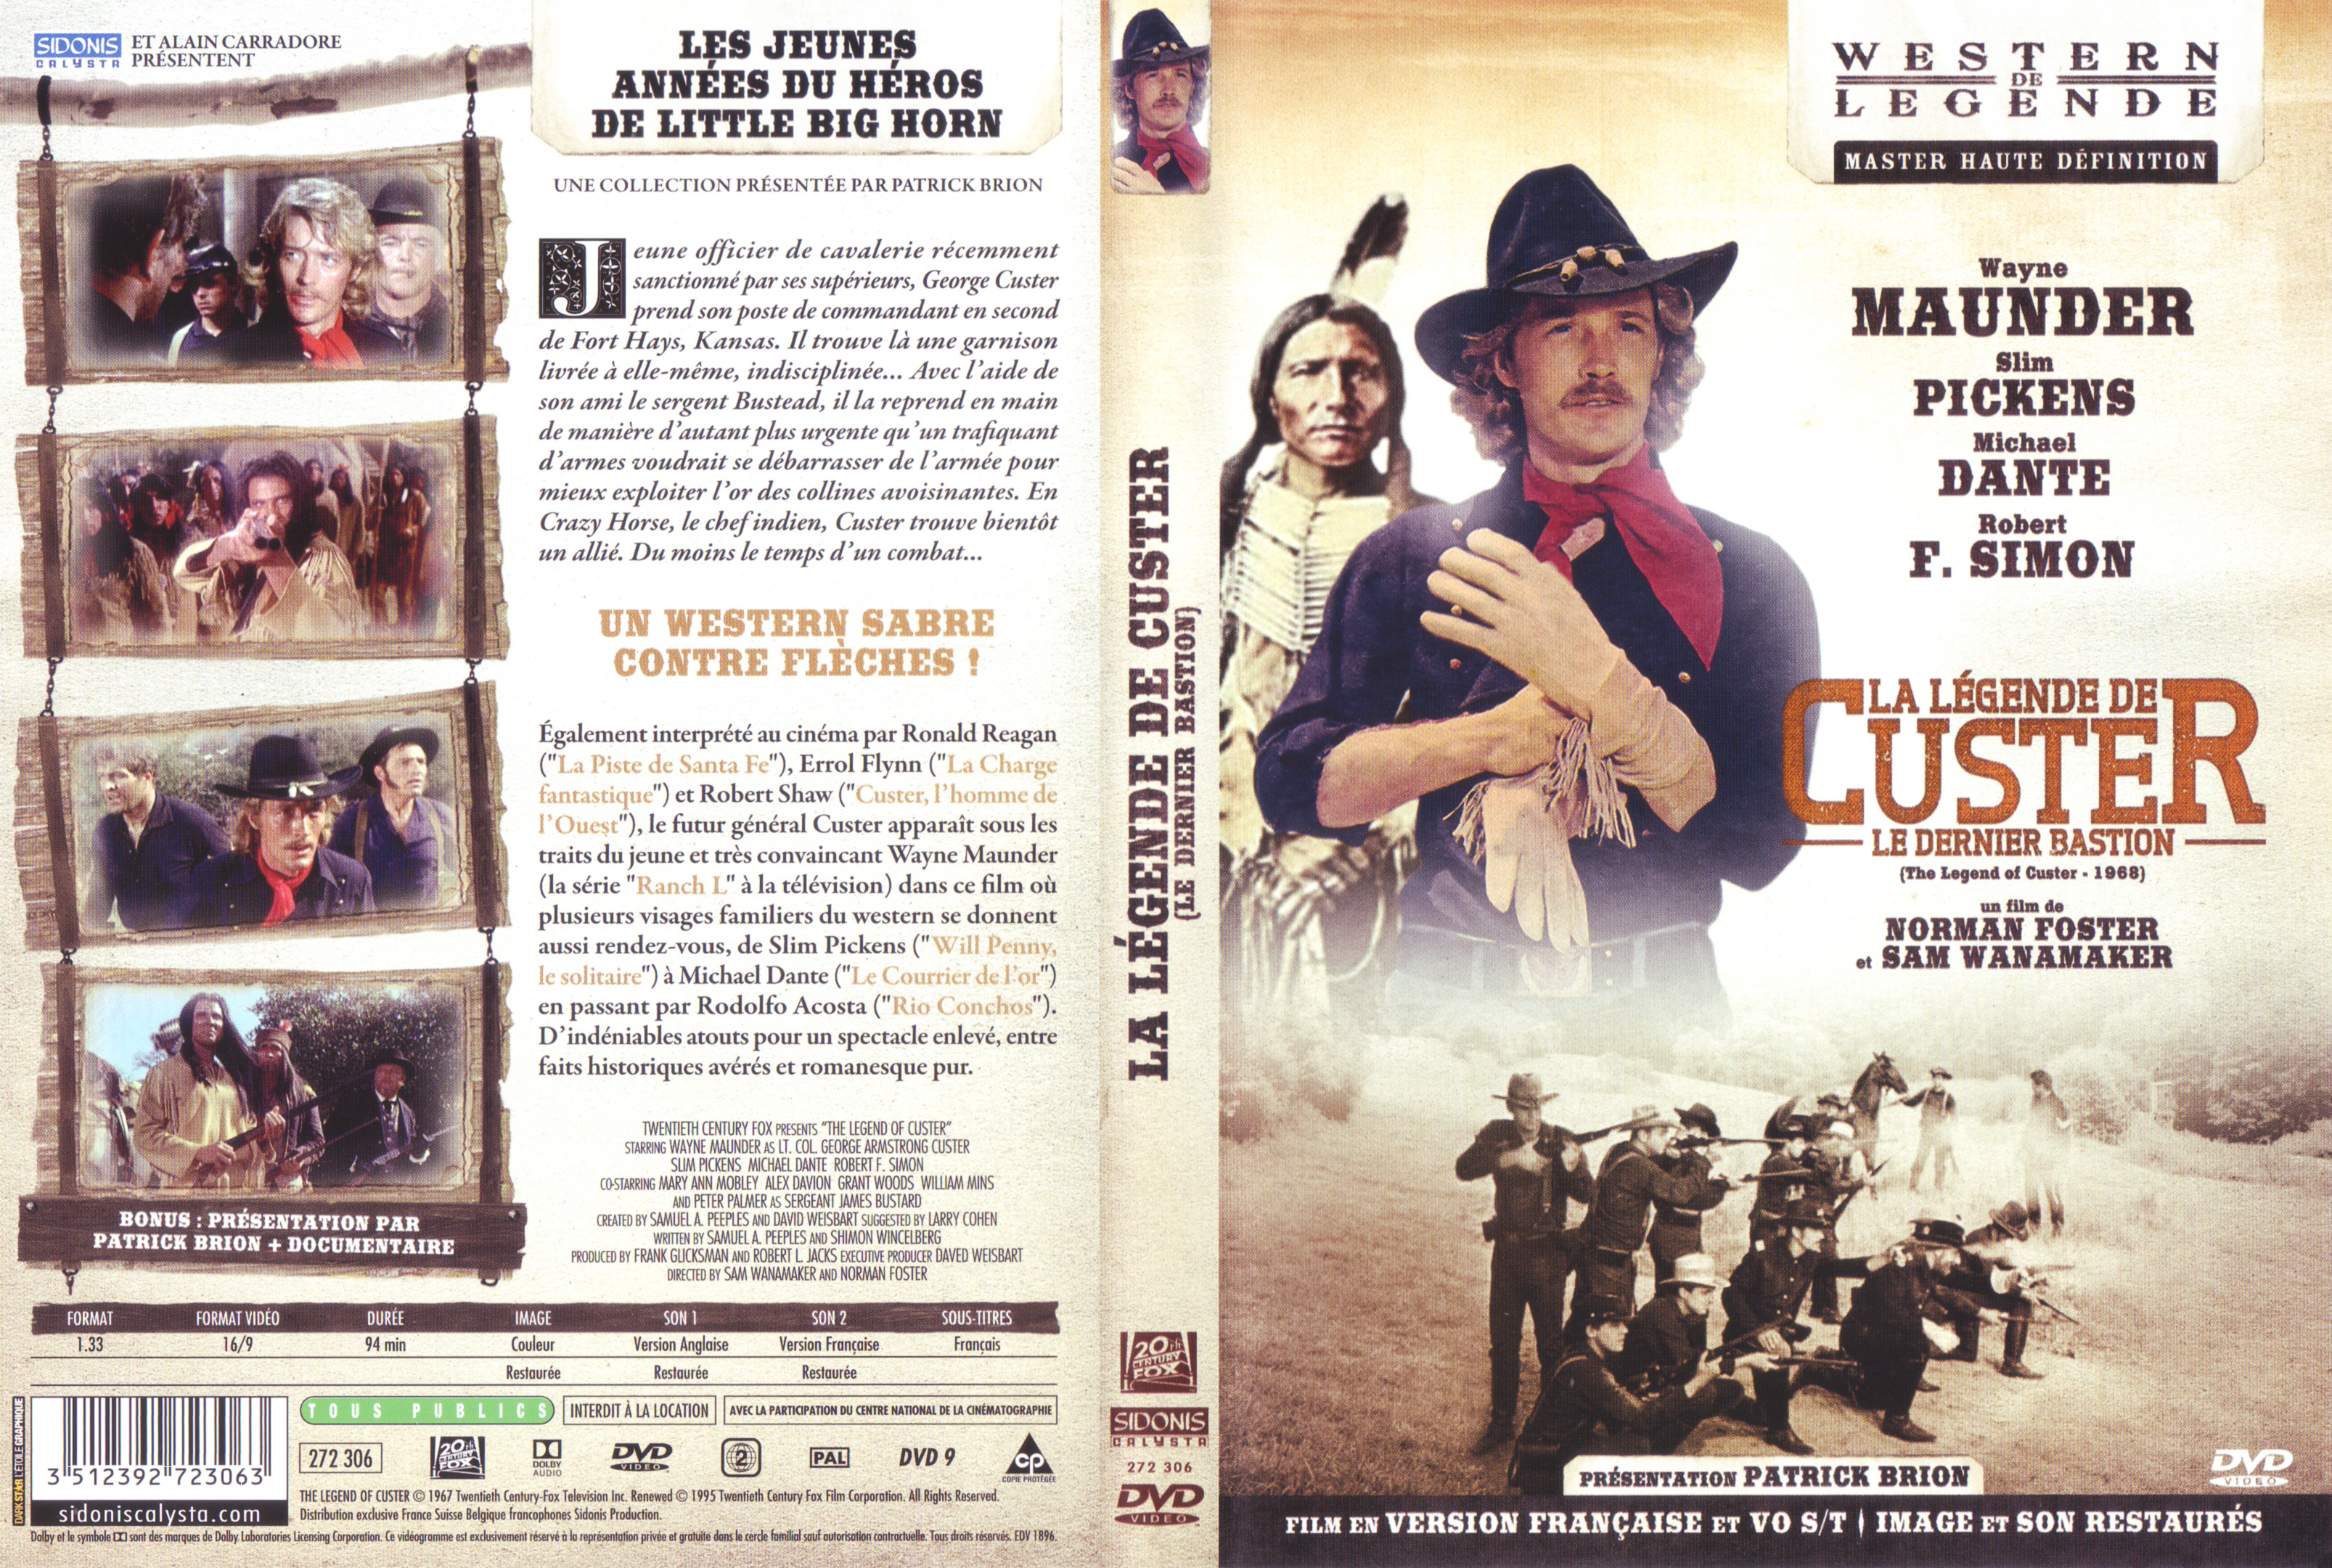 Jaquette DVD La lgende de Custer (Le dernier bastion)